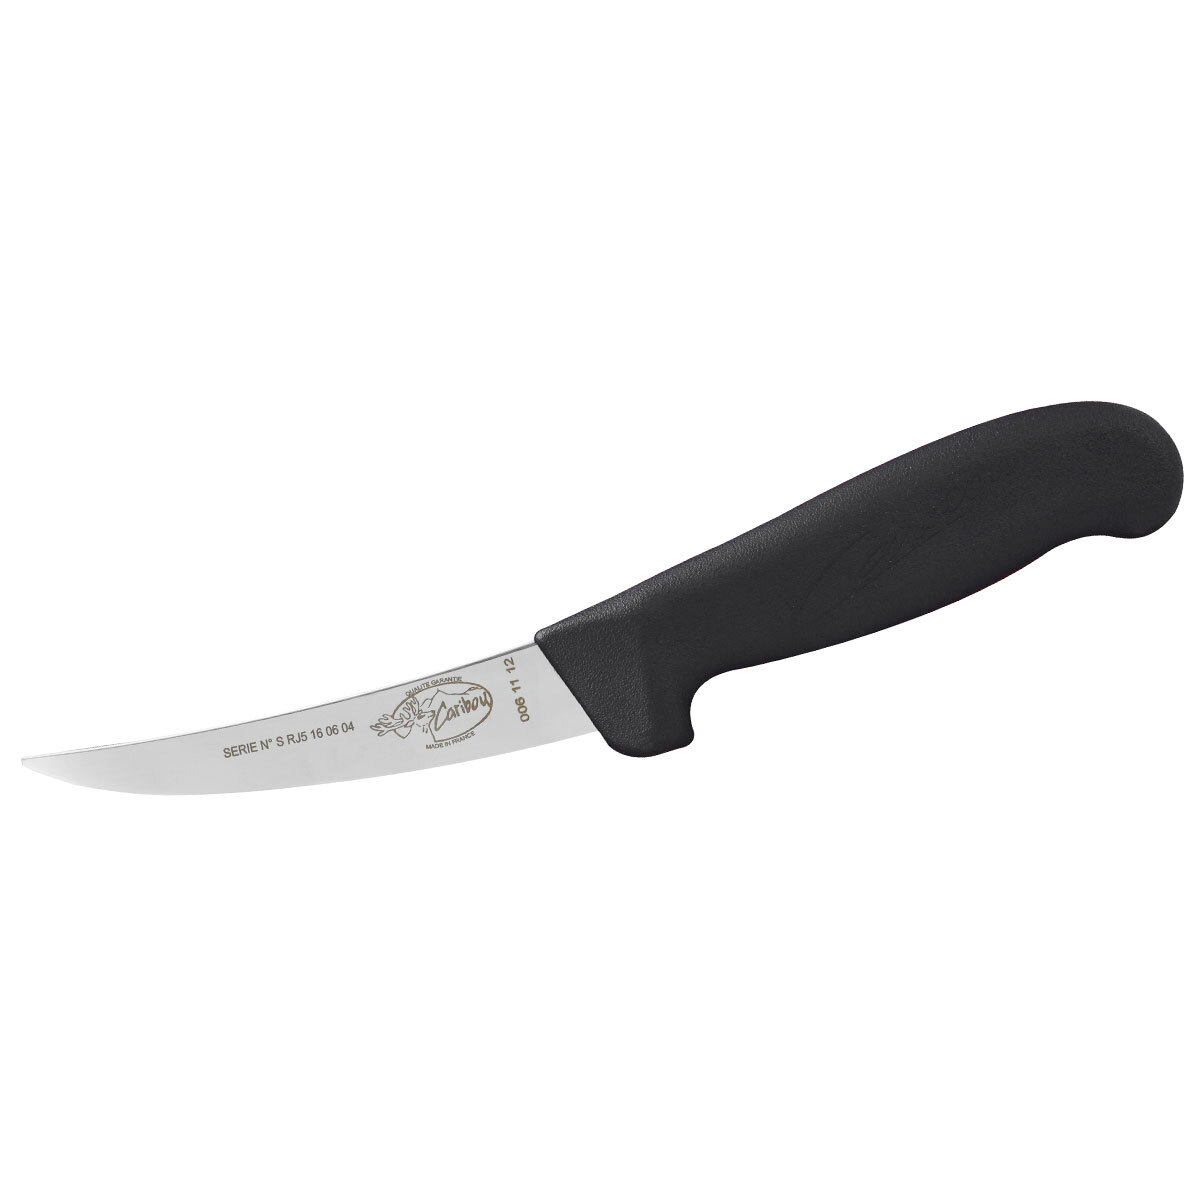 Caribou Boning Knife 12cm (5)